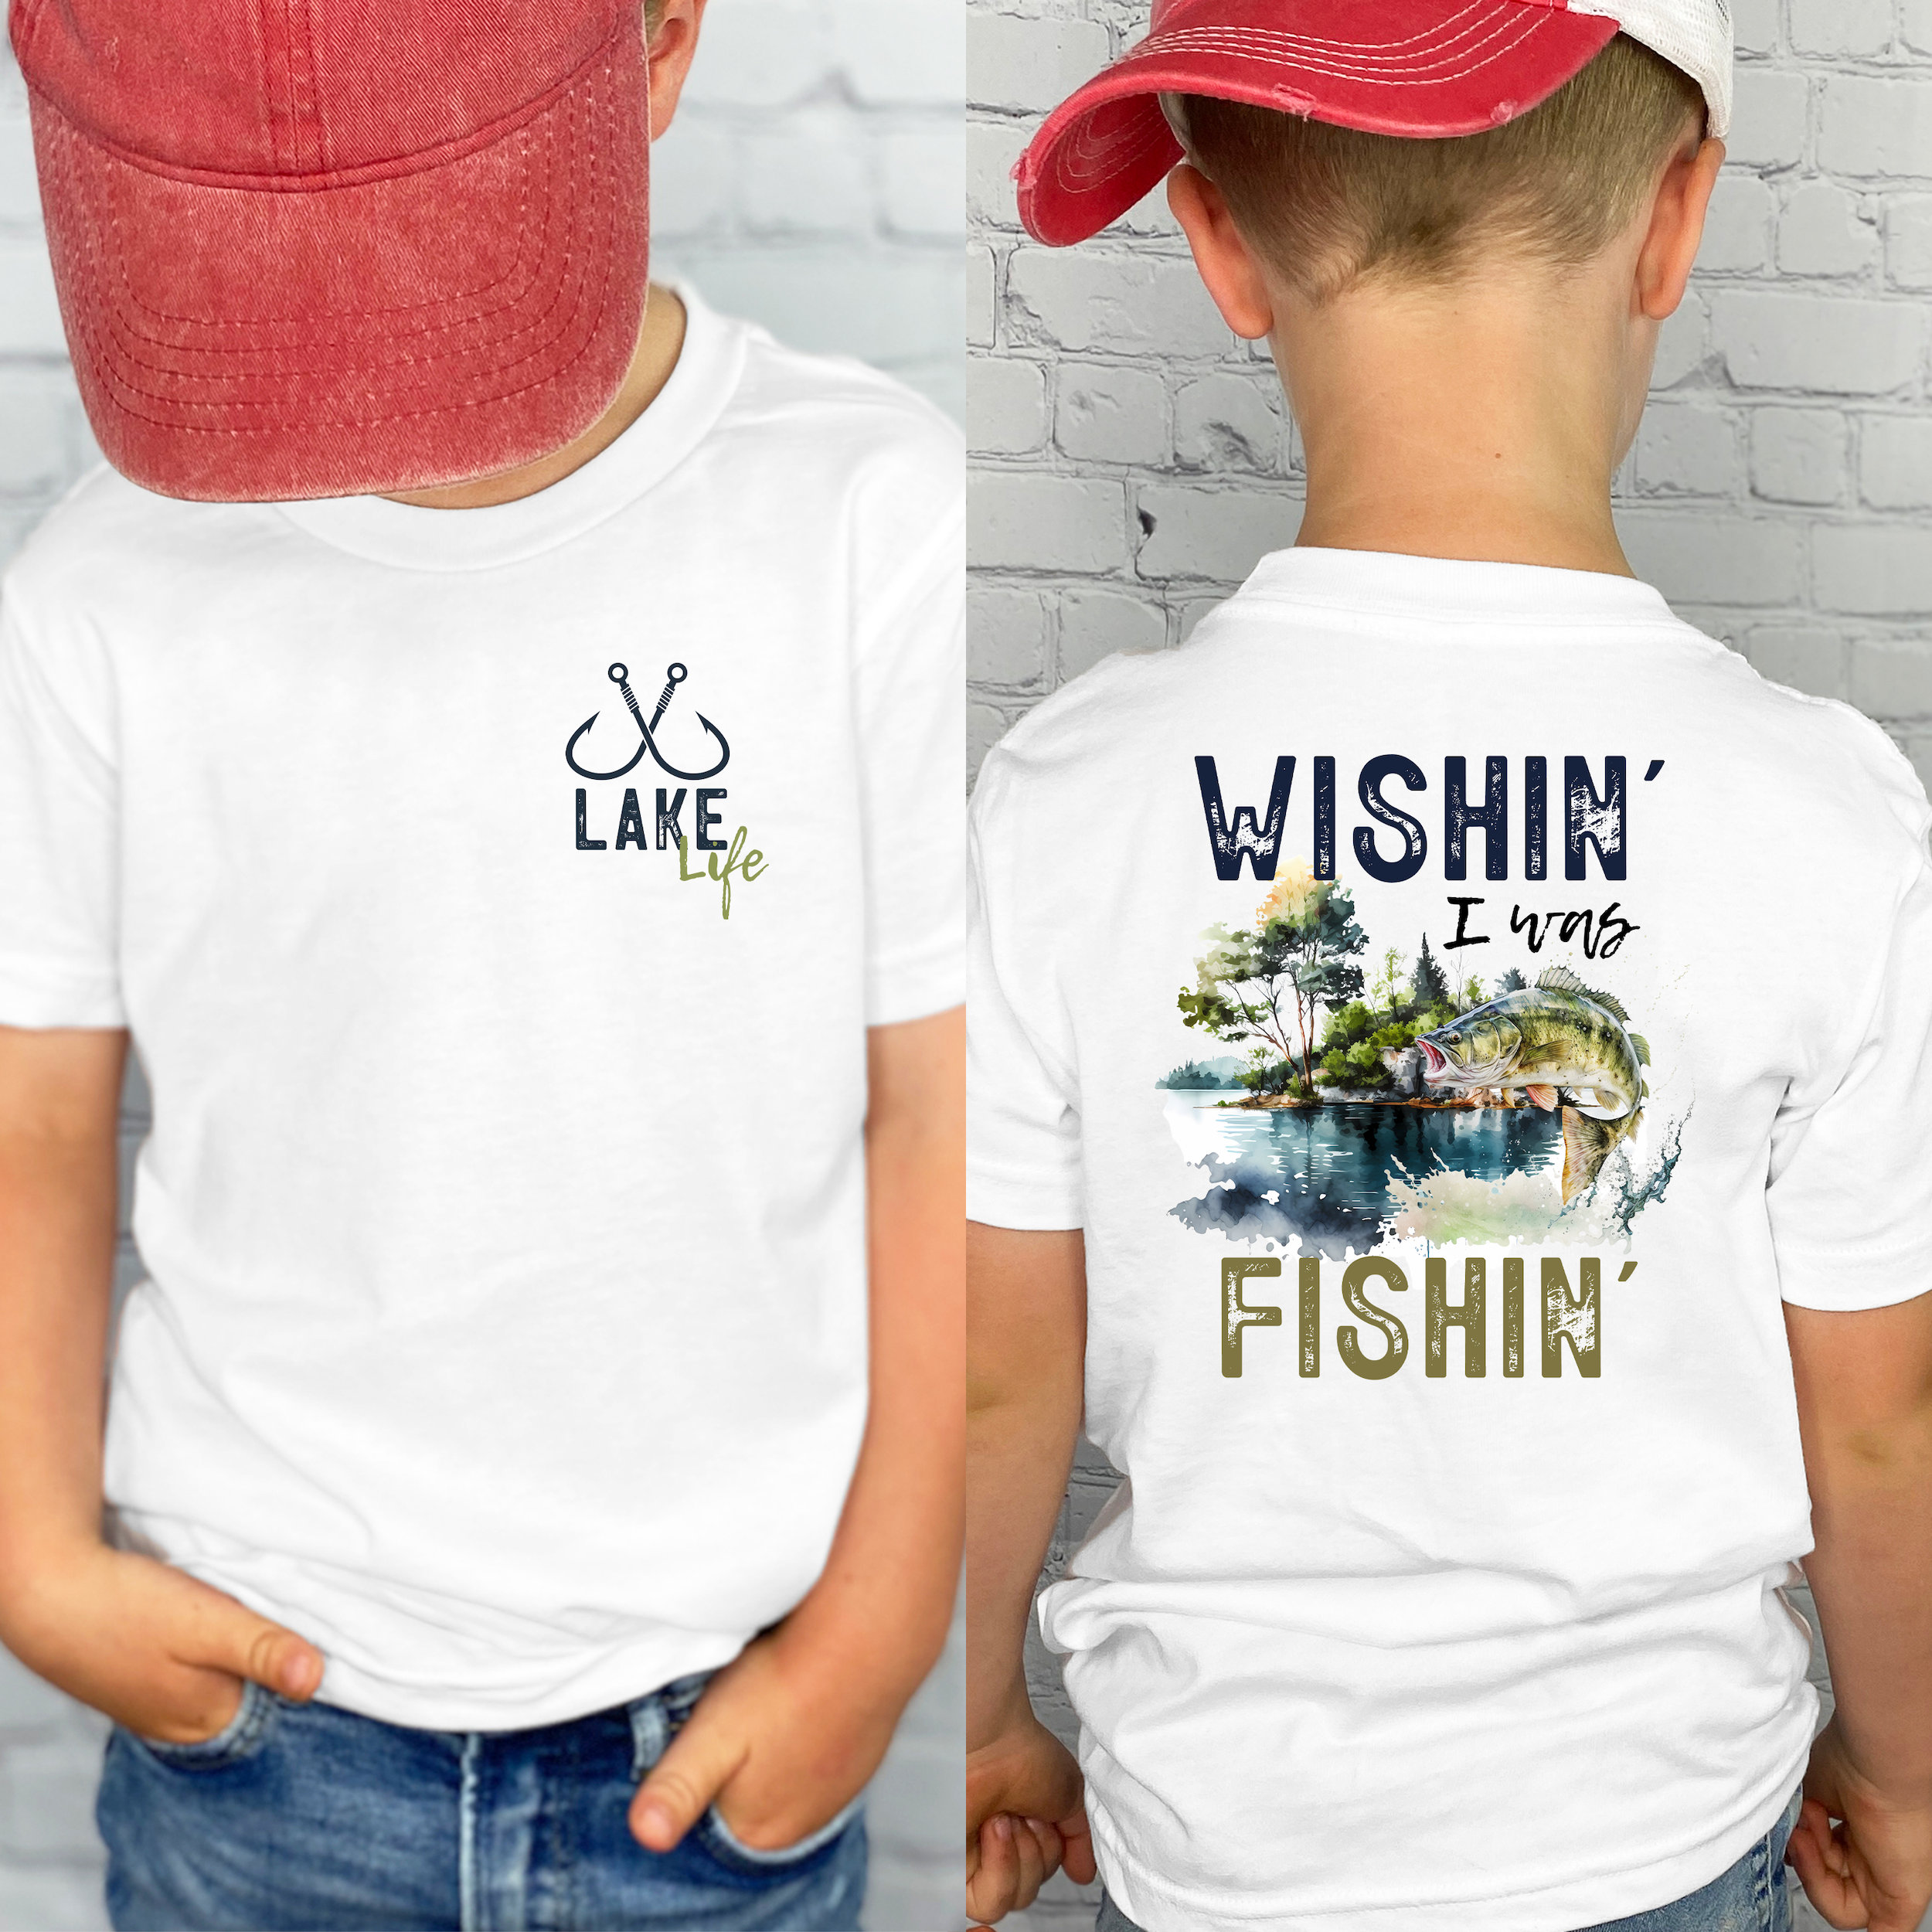 Fishing Shirt, Wishin I Was Fishin, Lake Life, Gone Fishin' Shirt, Biggest Catch Shirt, Reel, Tackle, Fish Shirt, Nautical, Fishing Rods